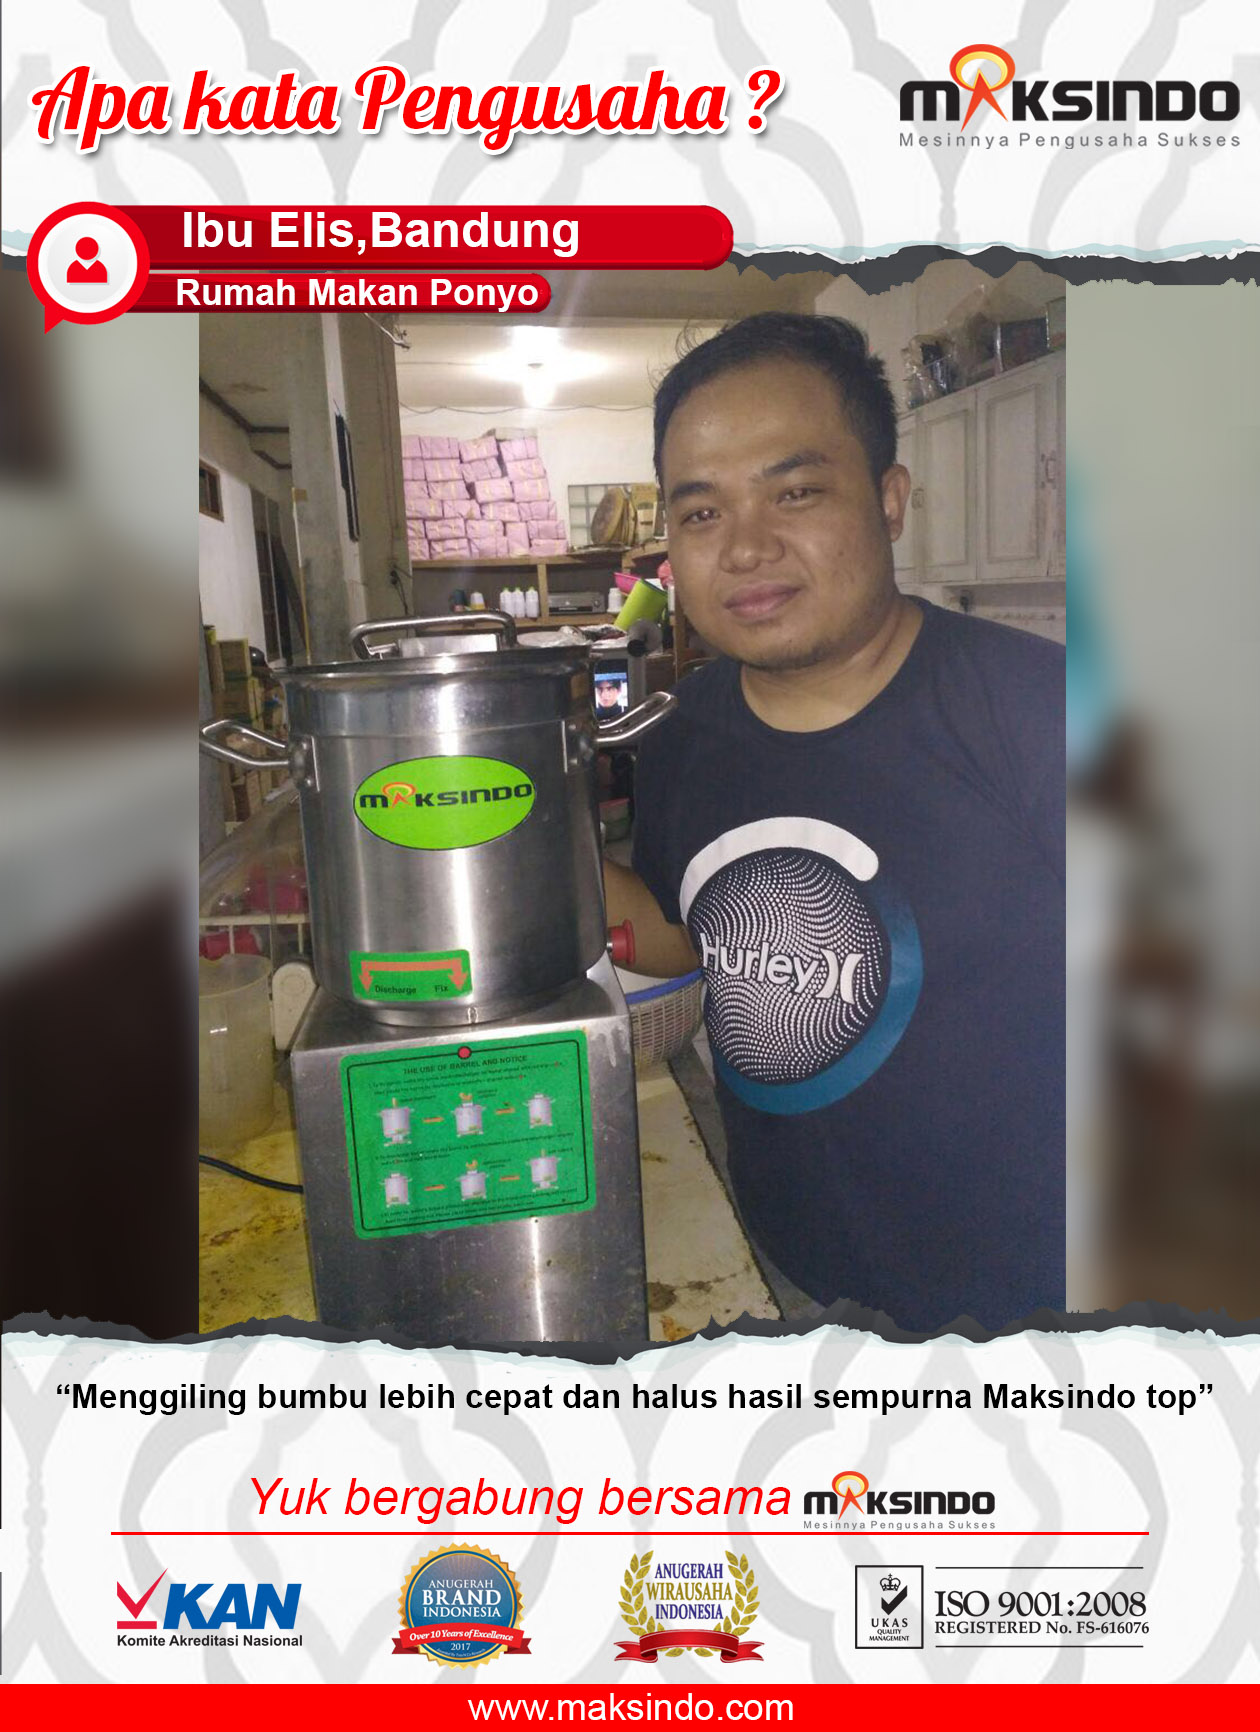 Rumah Makan Ponyo : Dengan Mesin Universal Fritter Maksindo Menggiling Bumbu Lebih Halus dan Cepat